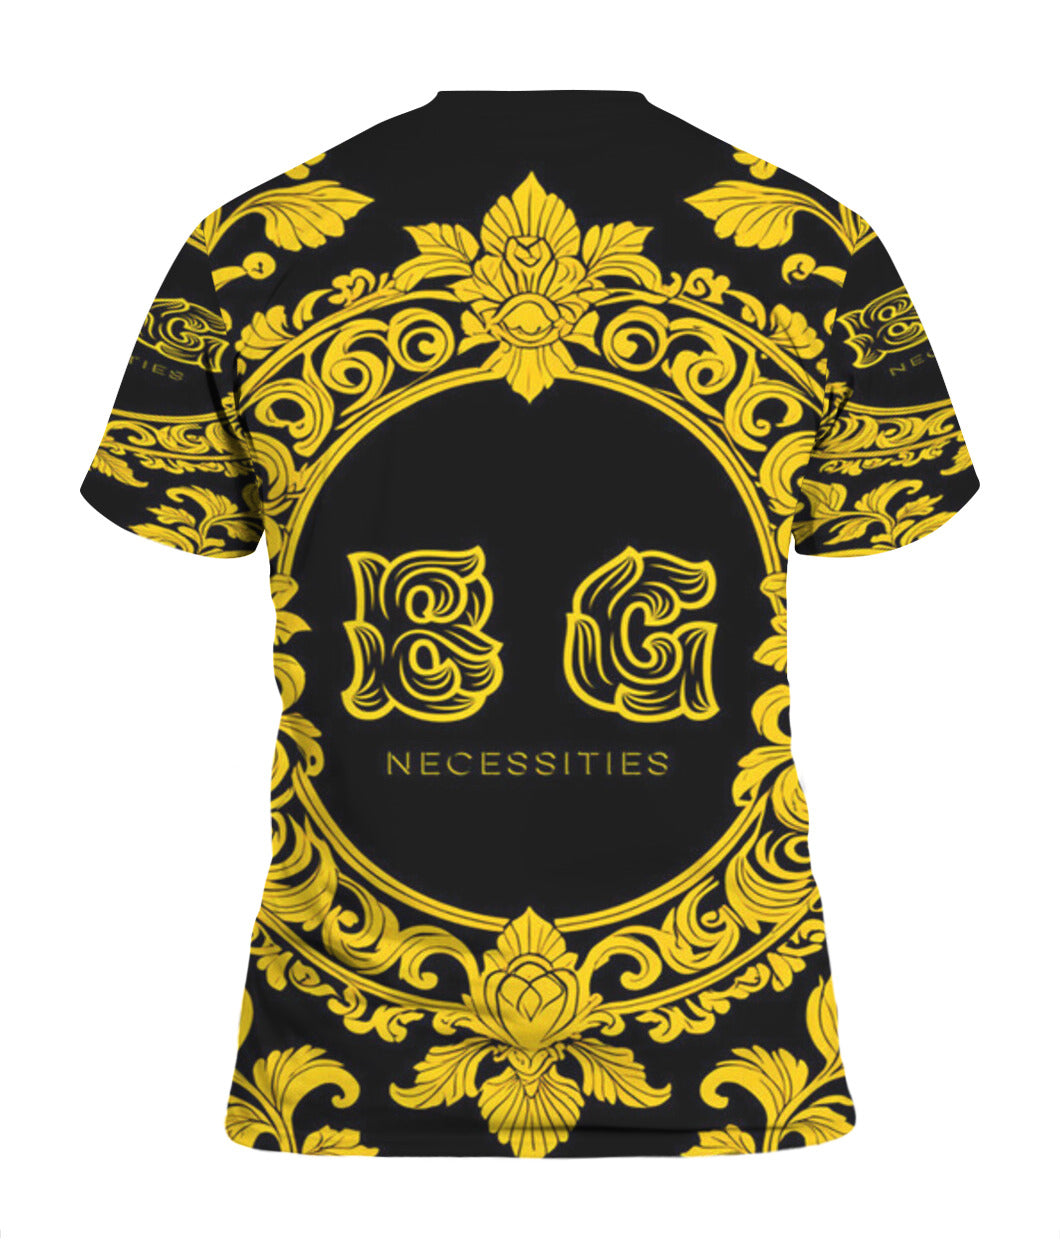 BG Black and Yellow Necessities Unisex T-Shirt by Burning Guitars